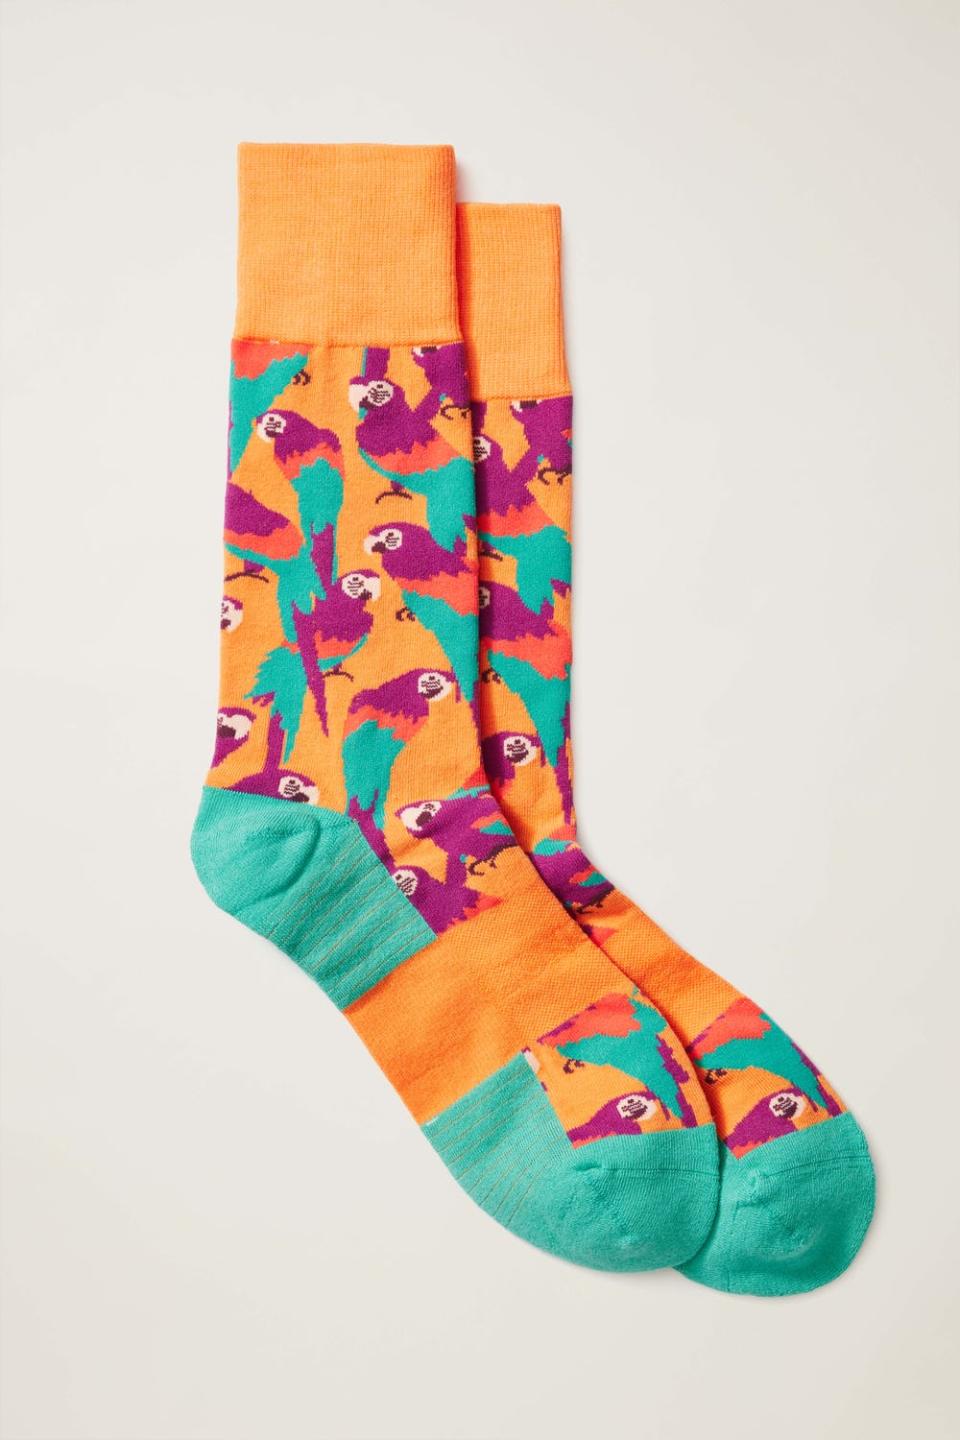 Bonobos Soft Everyday Socks